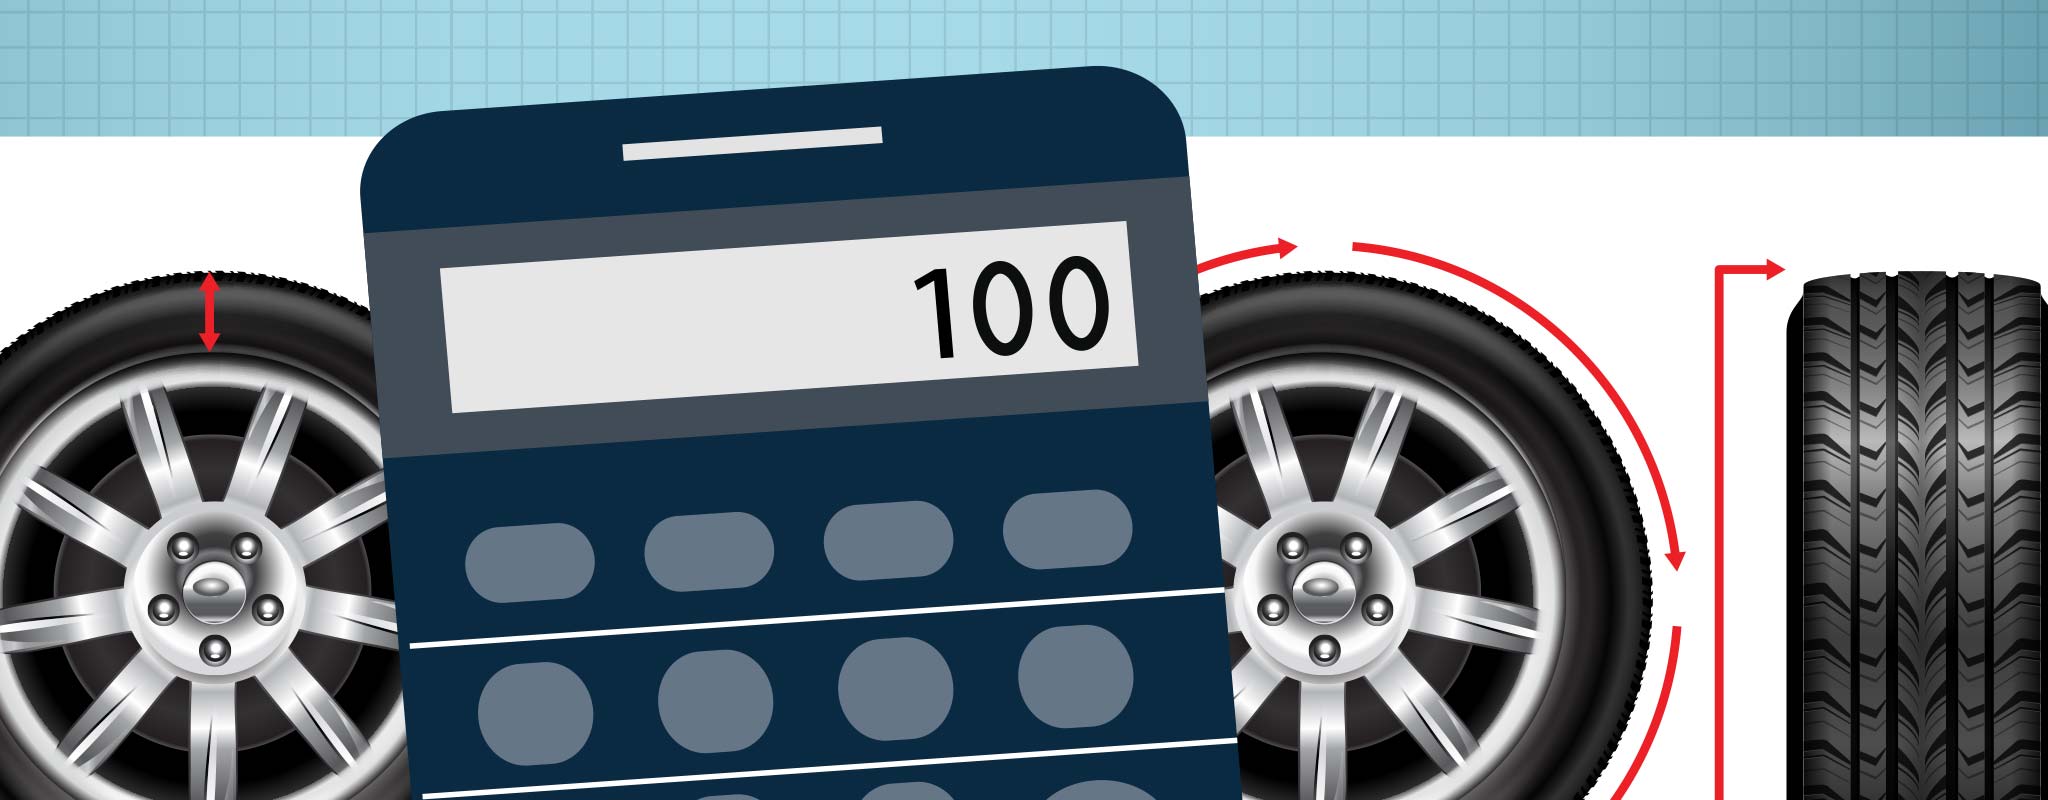 205/50-R17 vs 205/55-R17 Tire Comparison - Tire Size Calculator